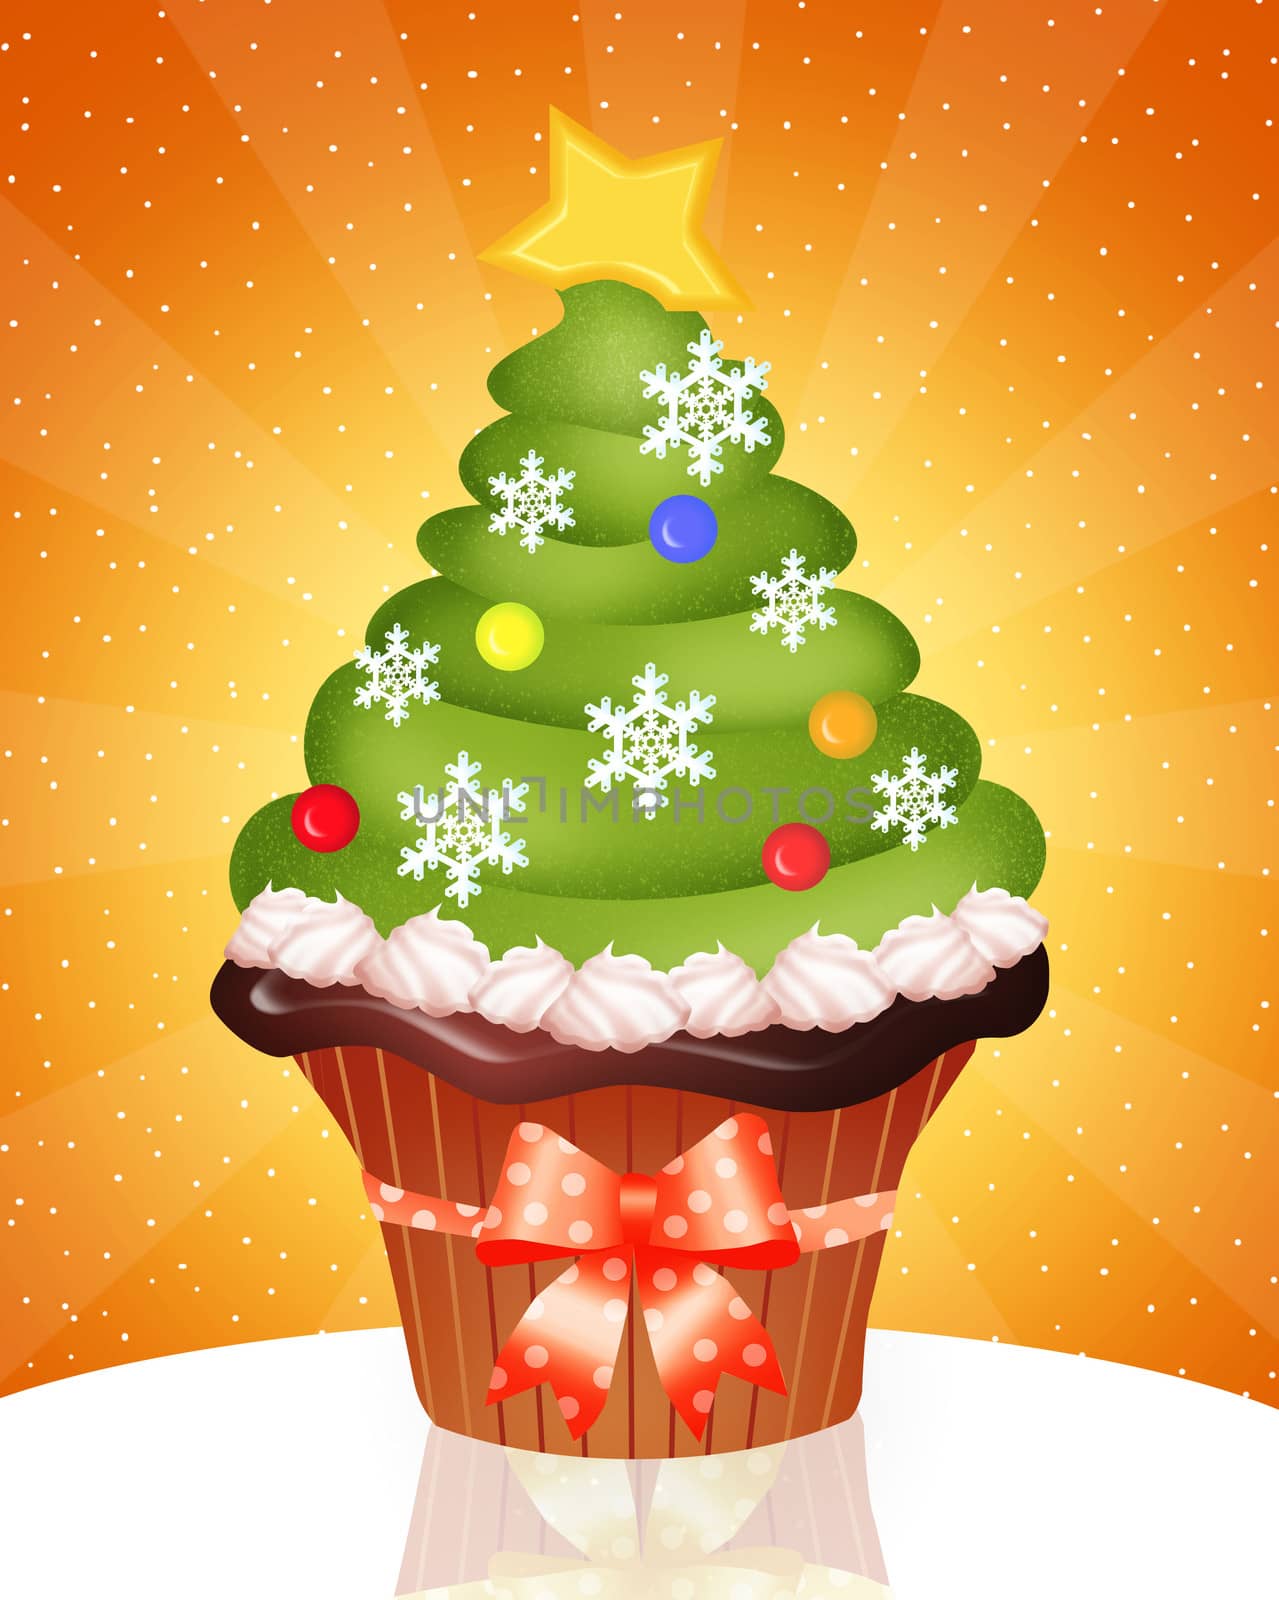 Christmas cupcake by adrenalina